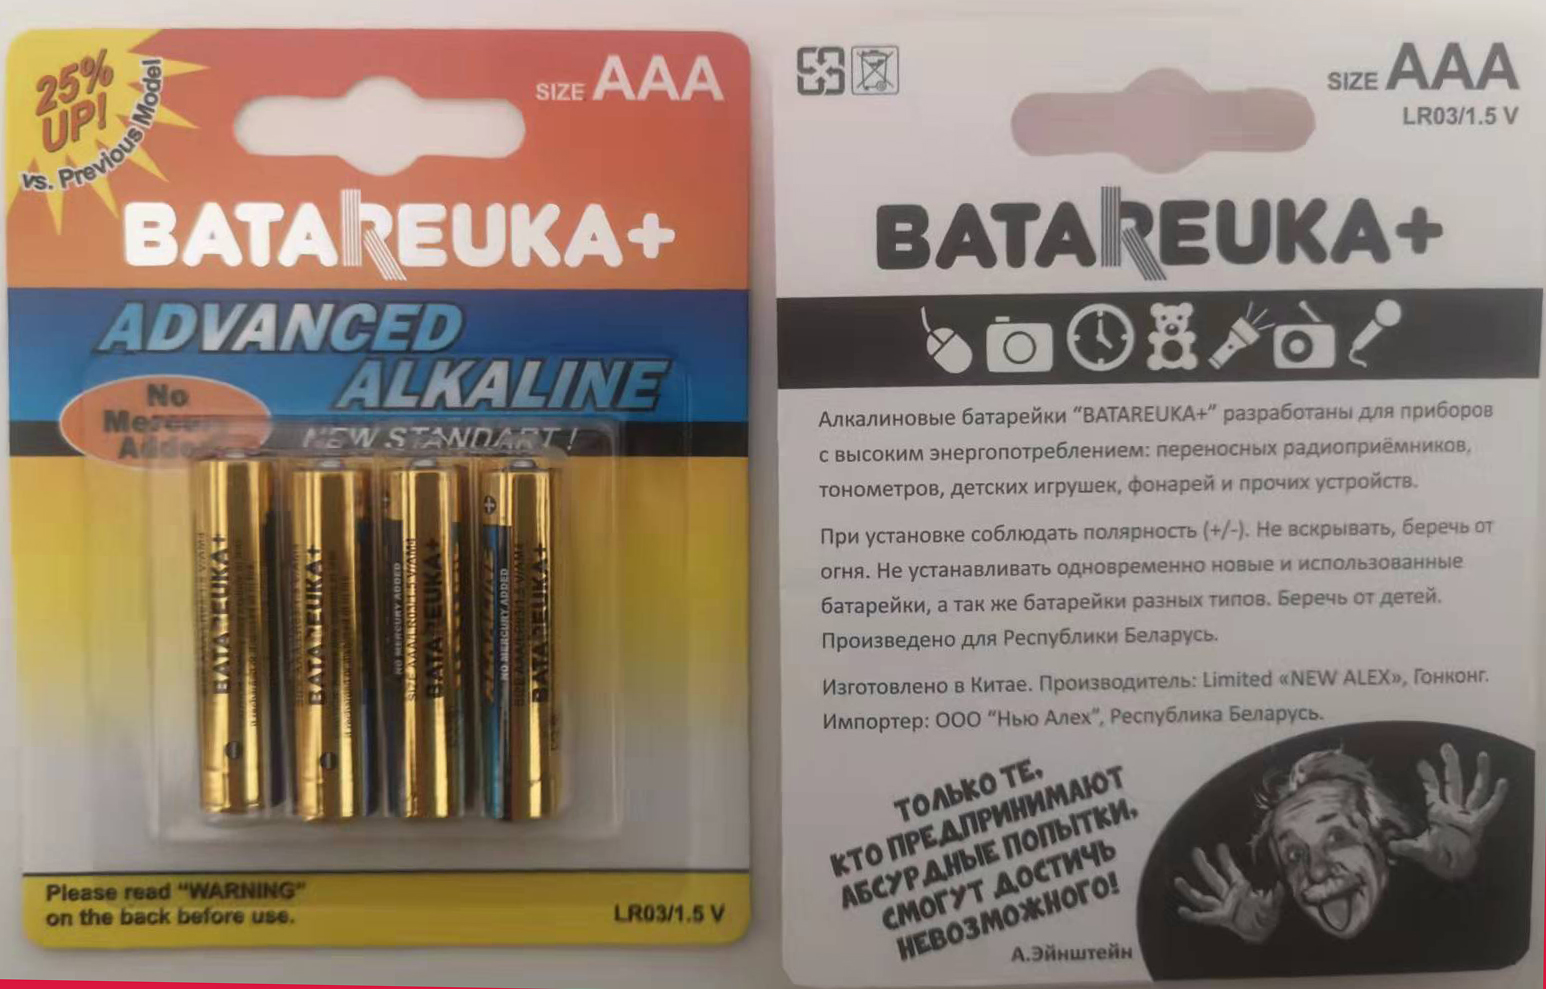 LR 03 Batareuka+